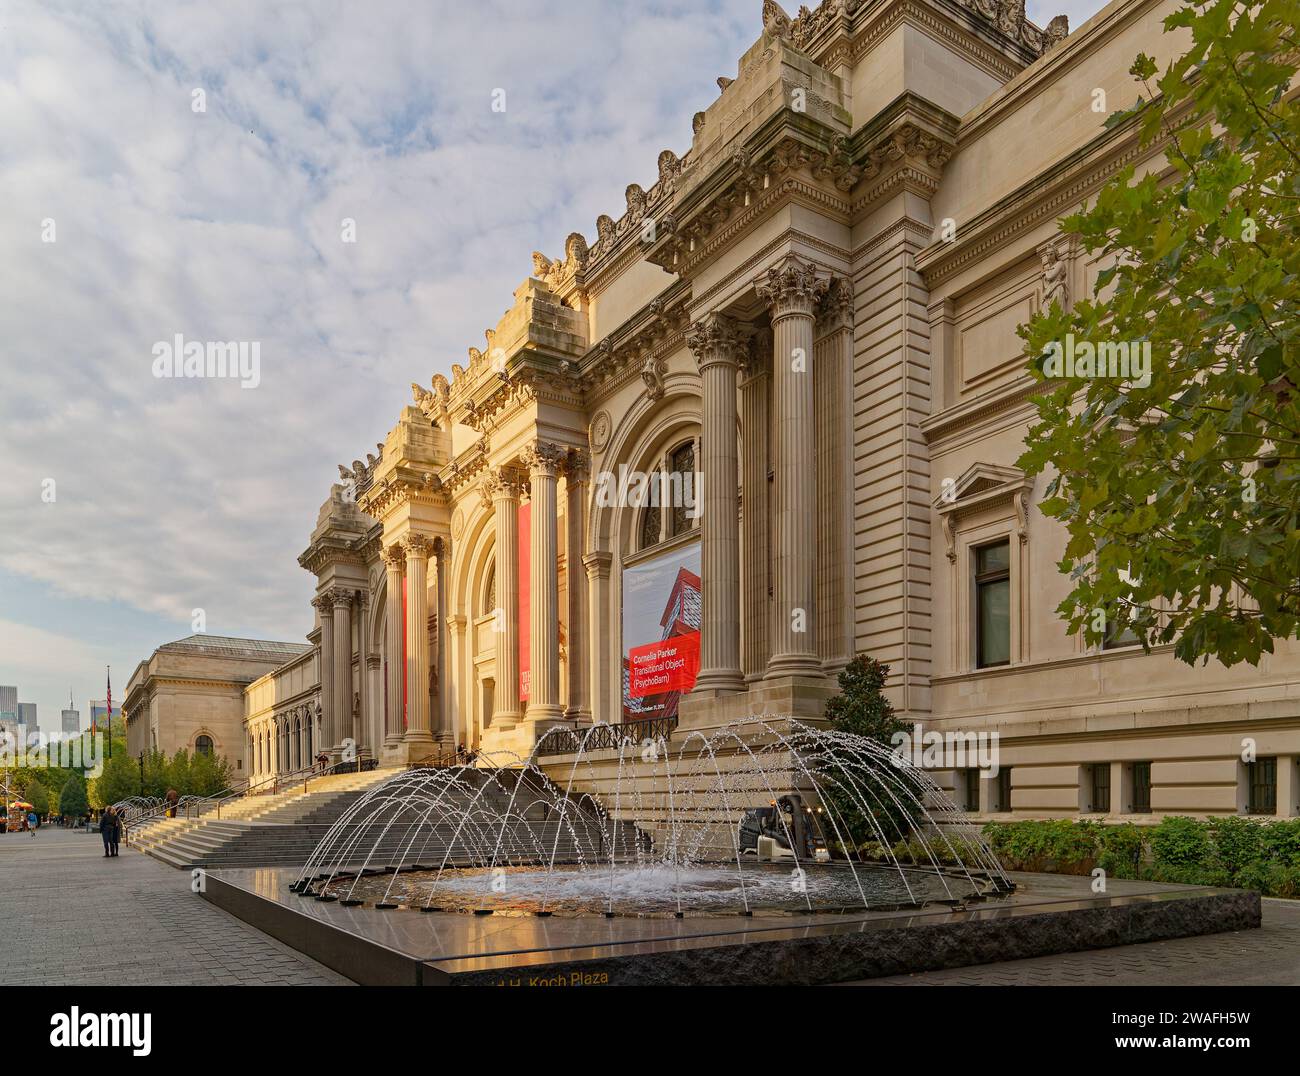 Le fontane animano il Metropolitan Museum of Art, un monumentale amalgama di architetti e stili, parte del famoso "Museum Mile" di New York. Foto Stock